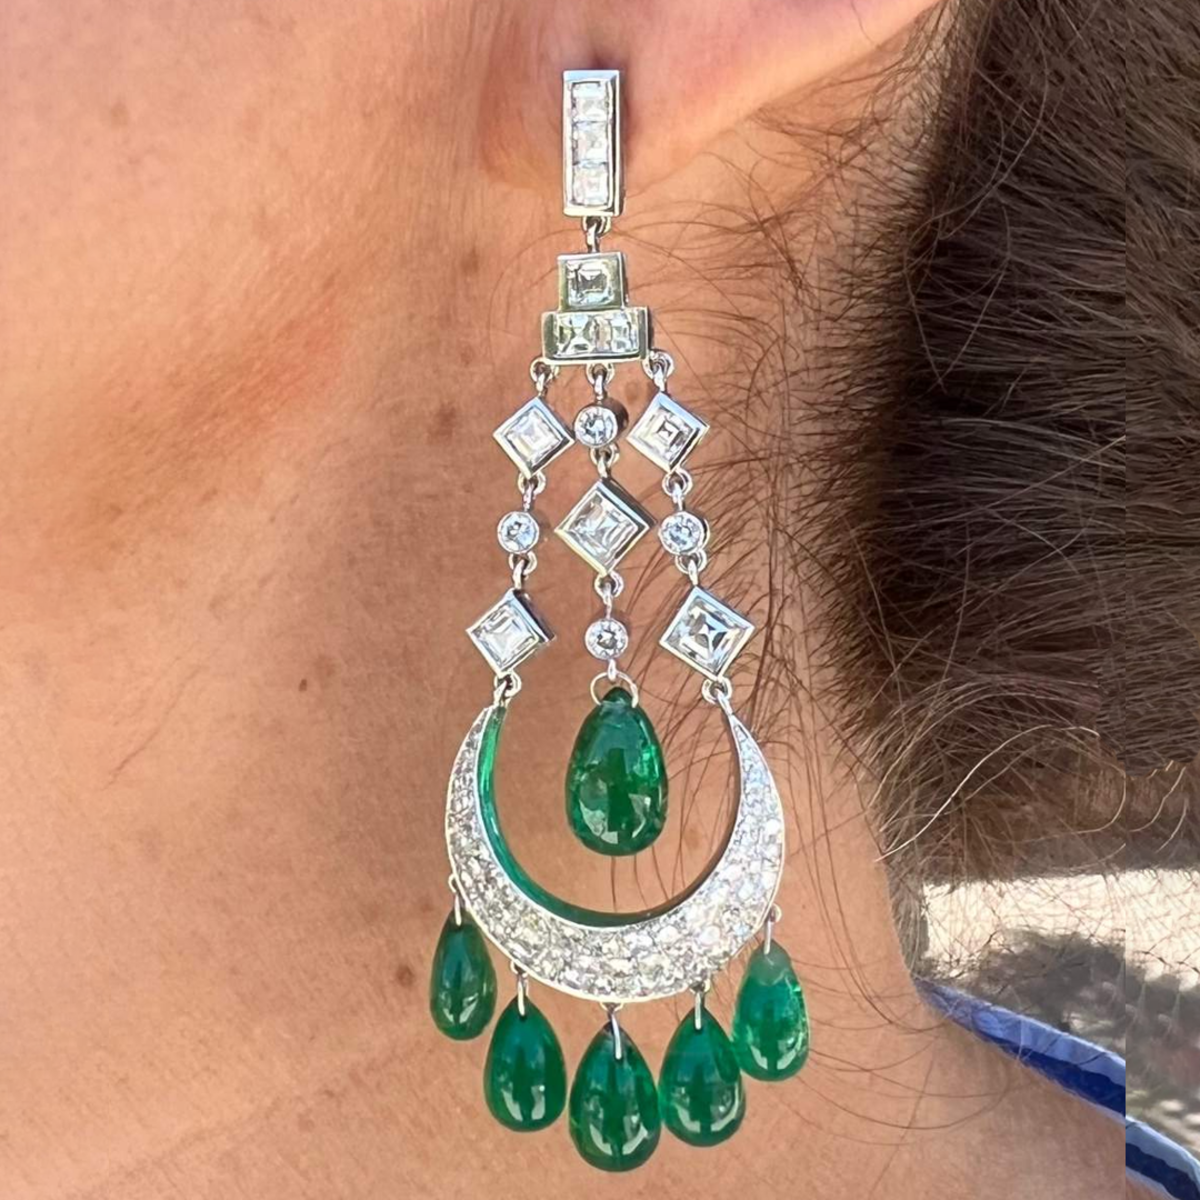 Post-1980s Platinum Diamond & Emerald Chandelier Earrings worn on ear